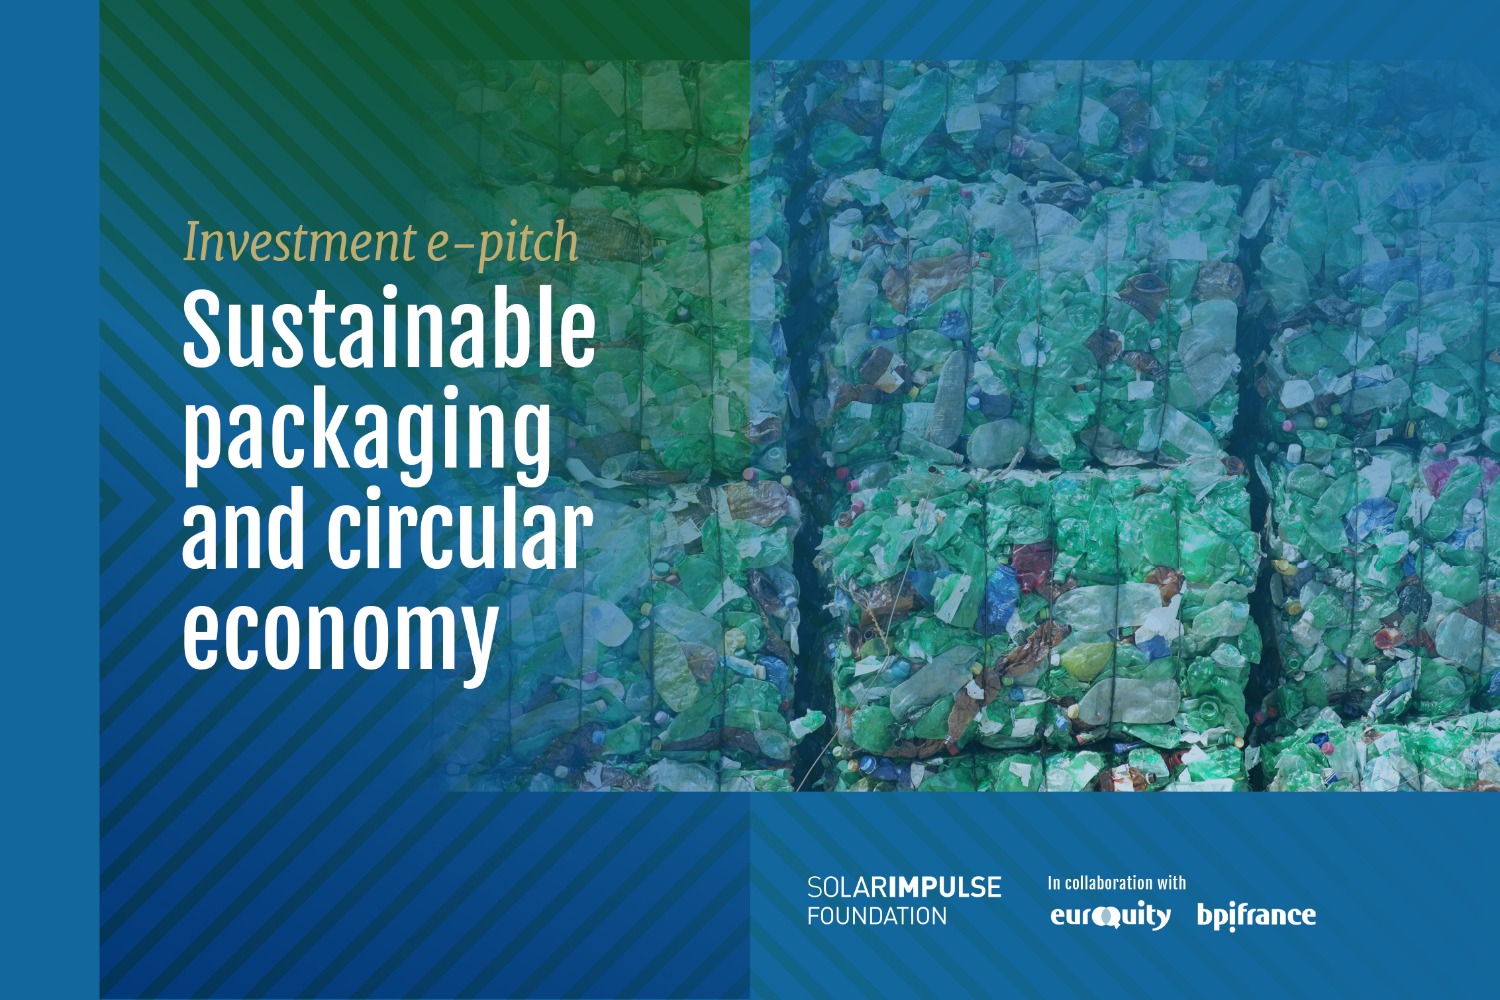 E-Pitch Solar Impulse Investment - "Embalaje sostenible y economía circular" 